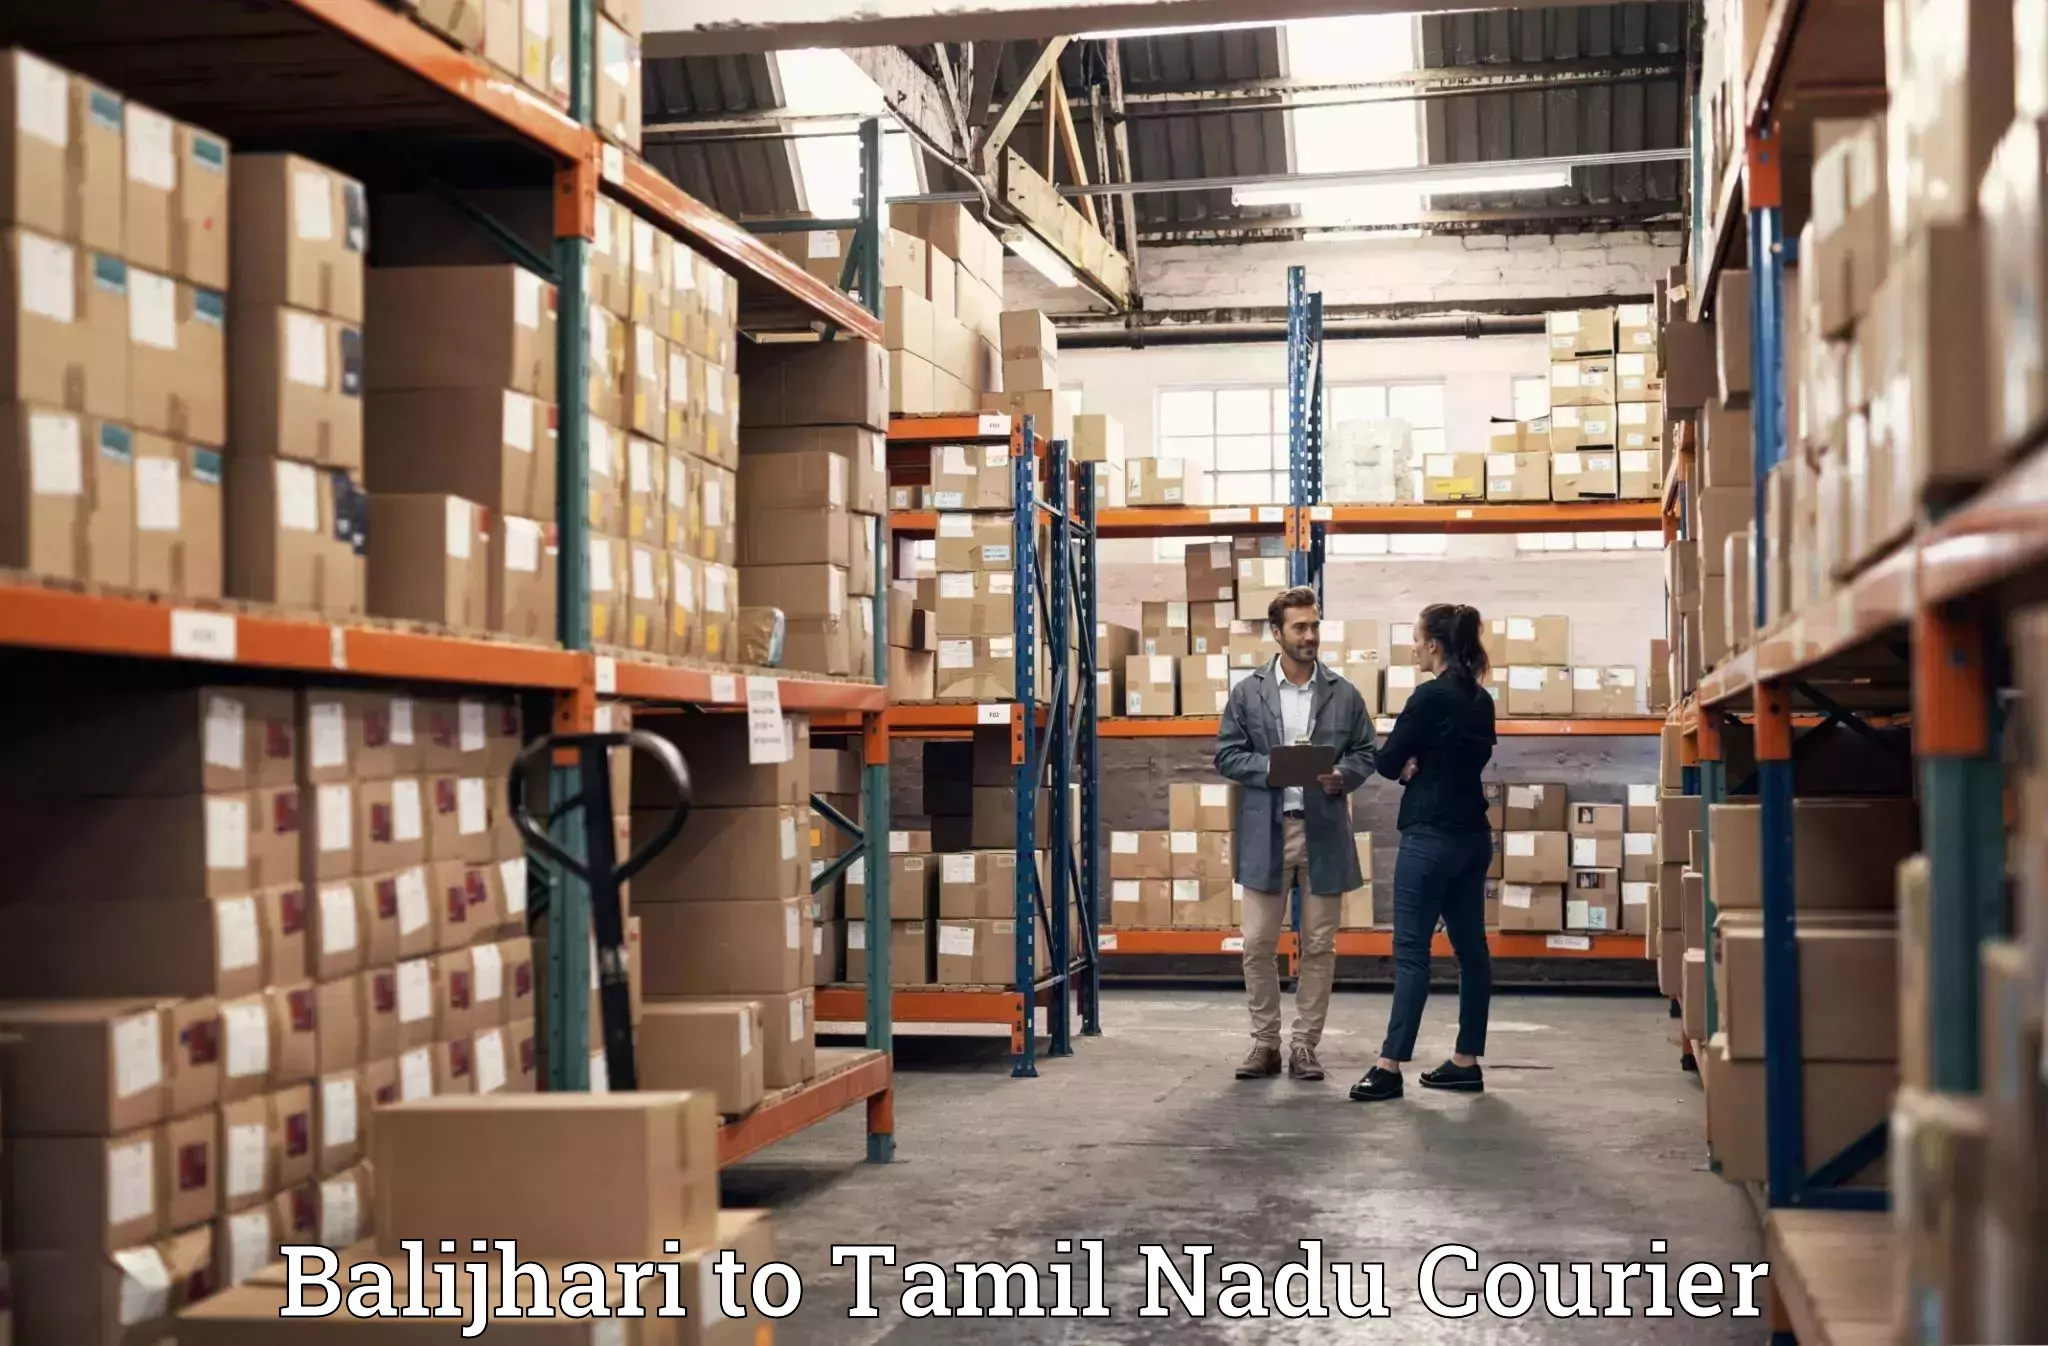 Furniture transport experts Balijhari to Tamil Nadu